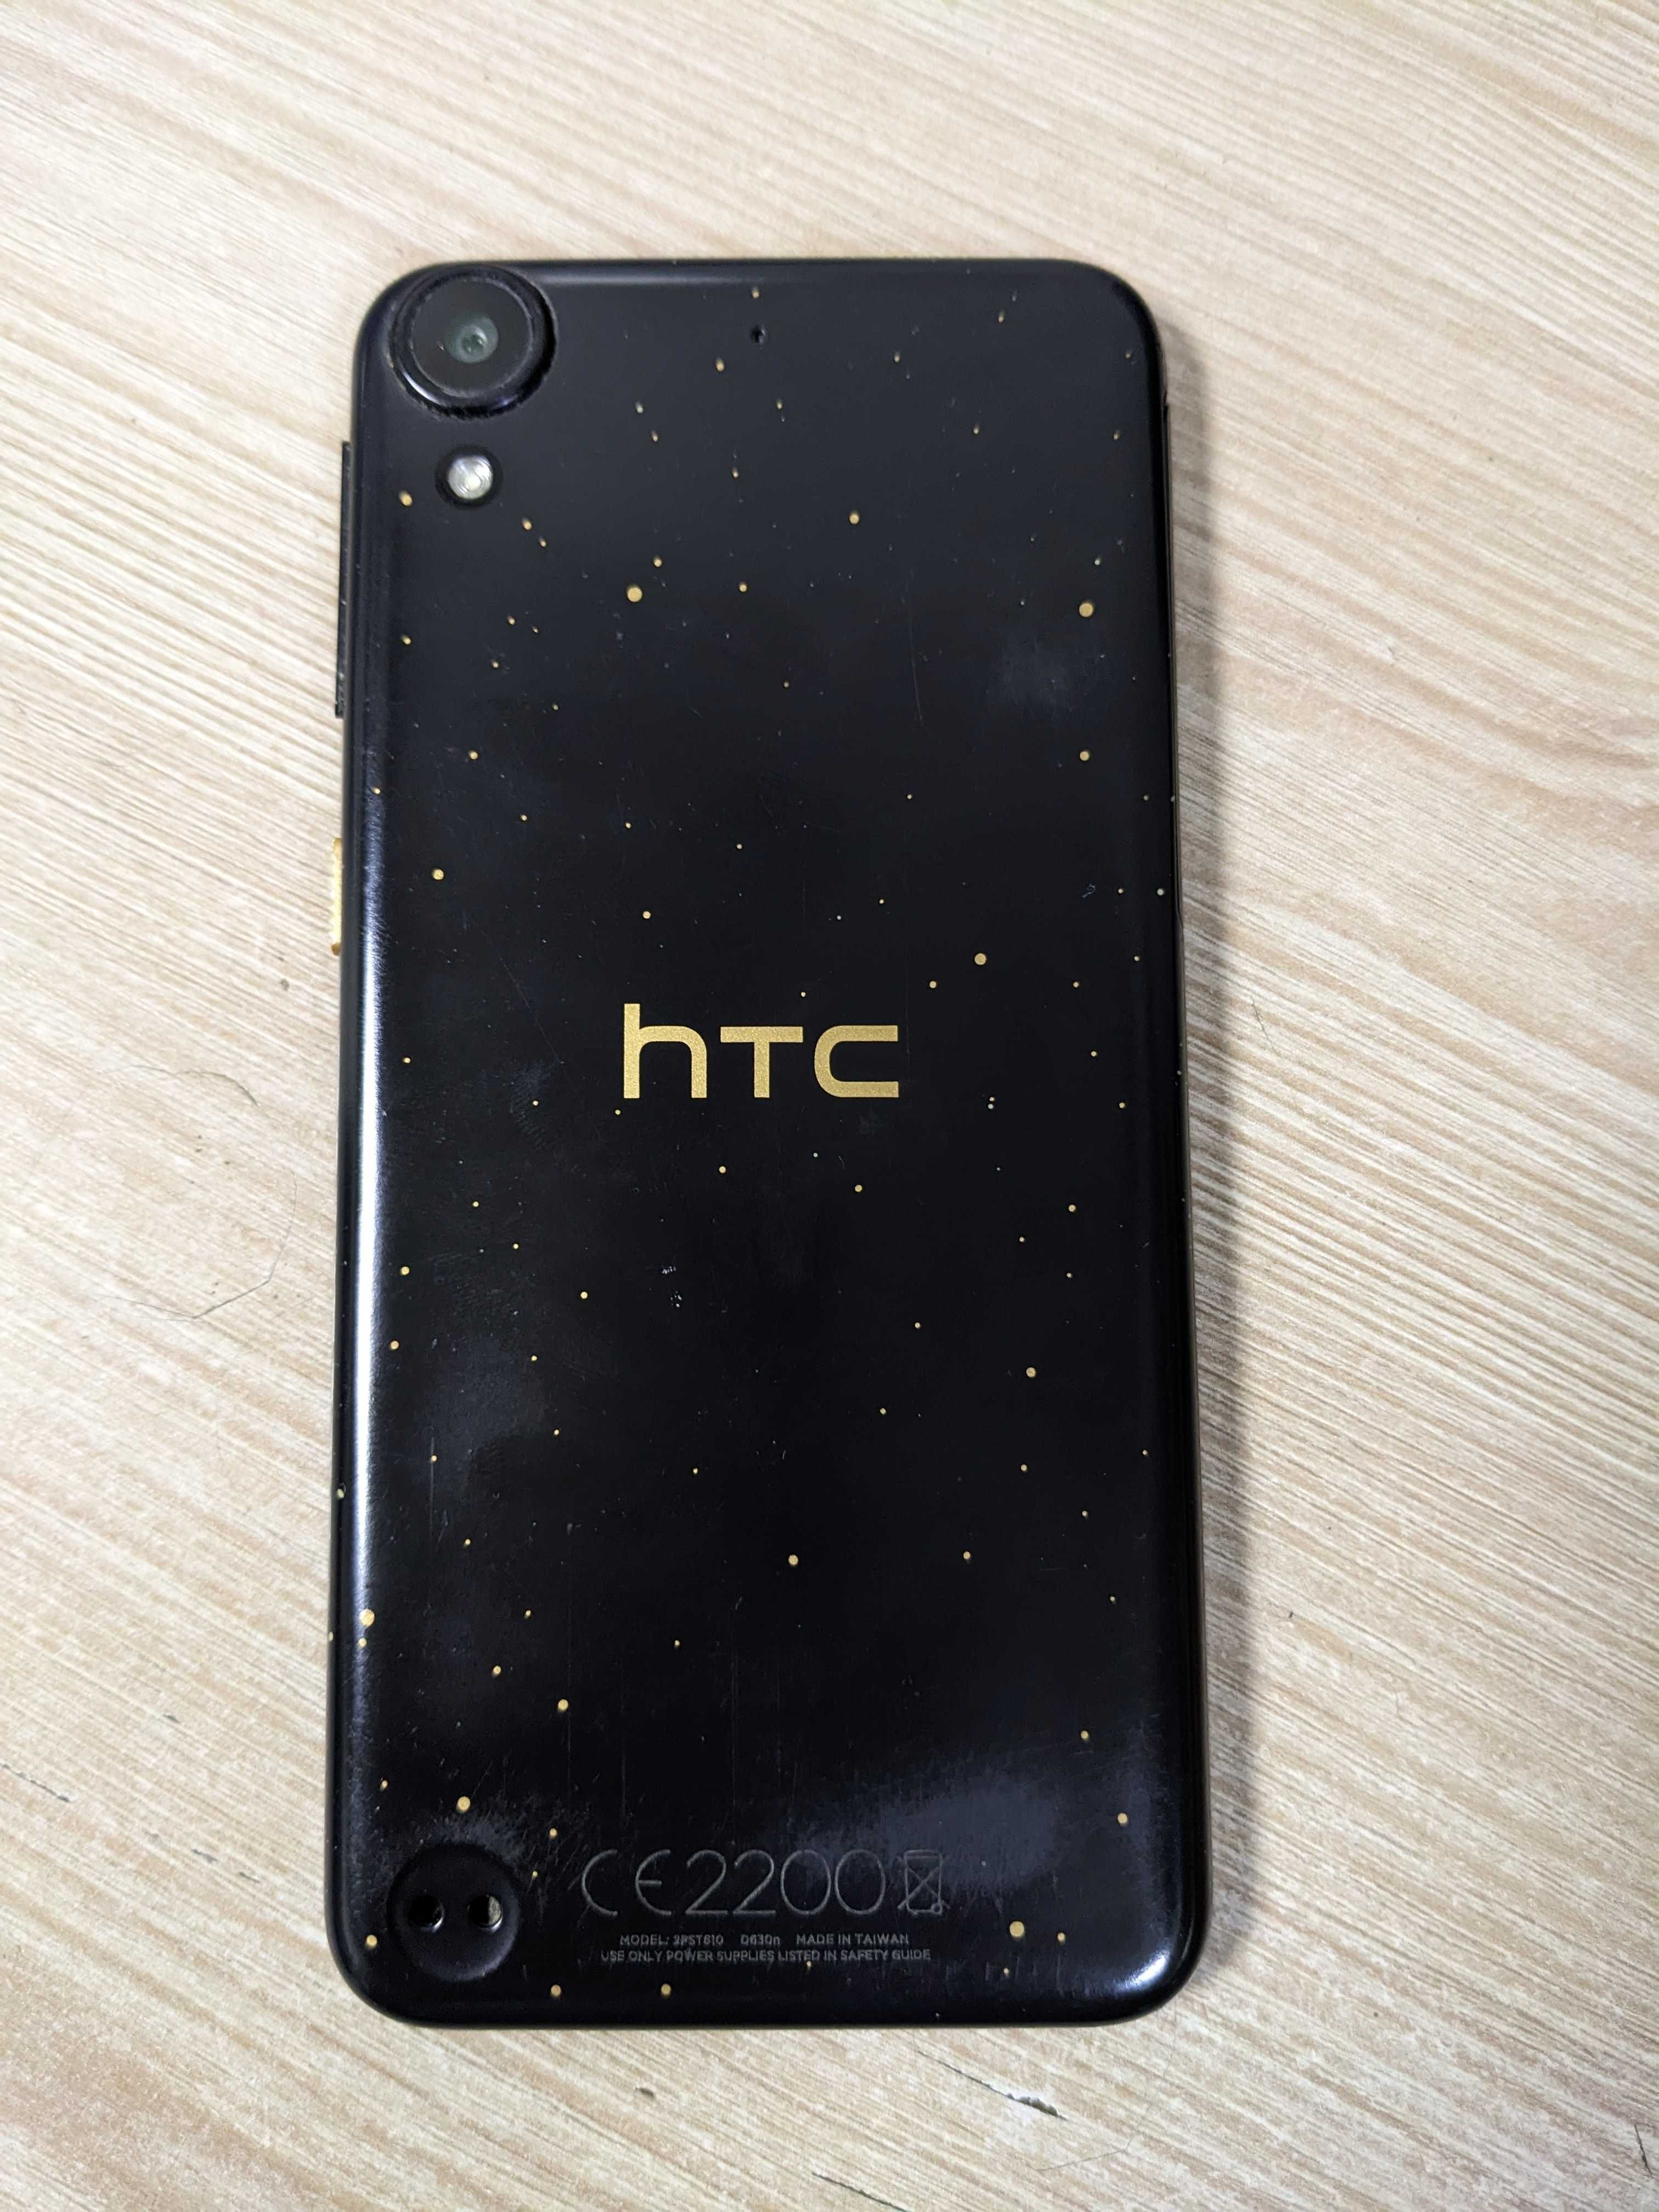 Смартфон HTC Desire 630 Dual Sim майже ідеал в коробці